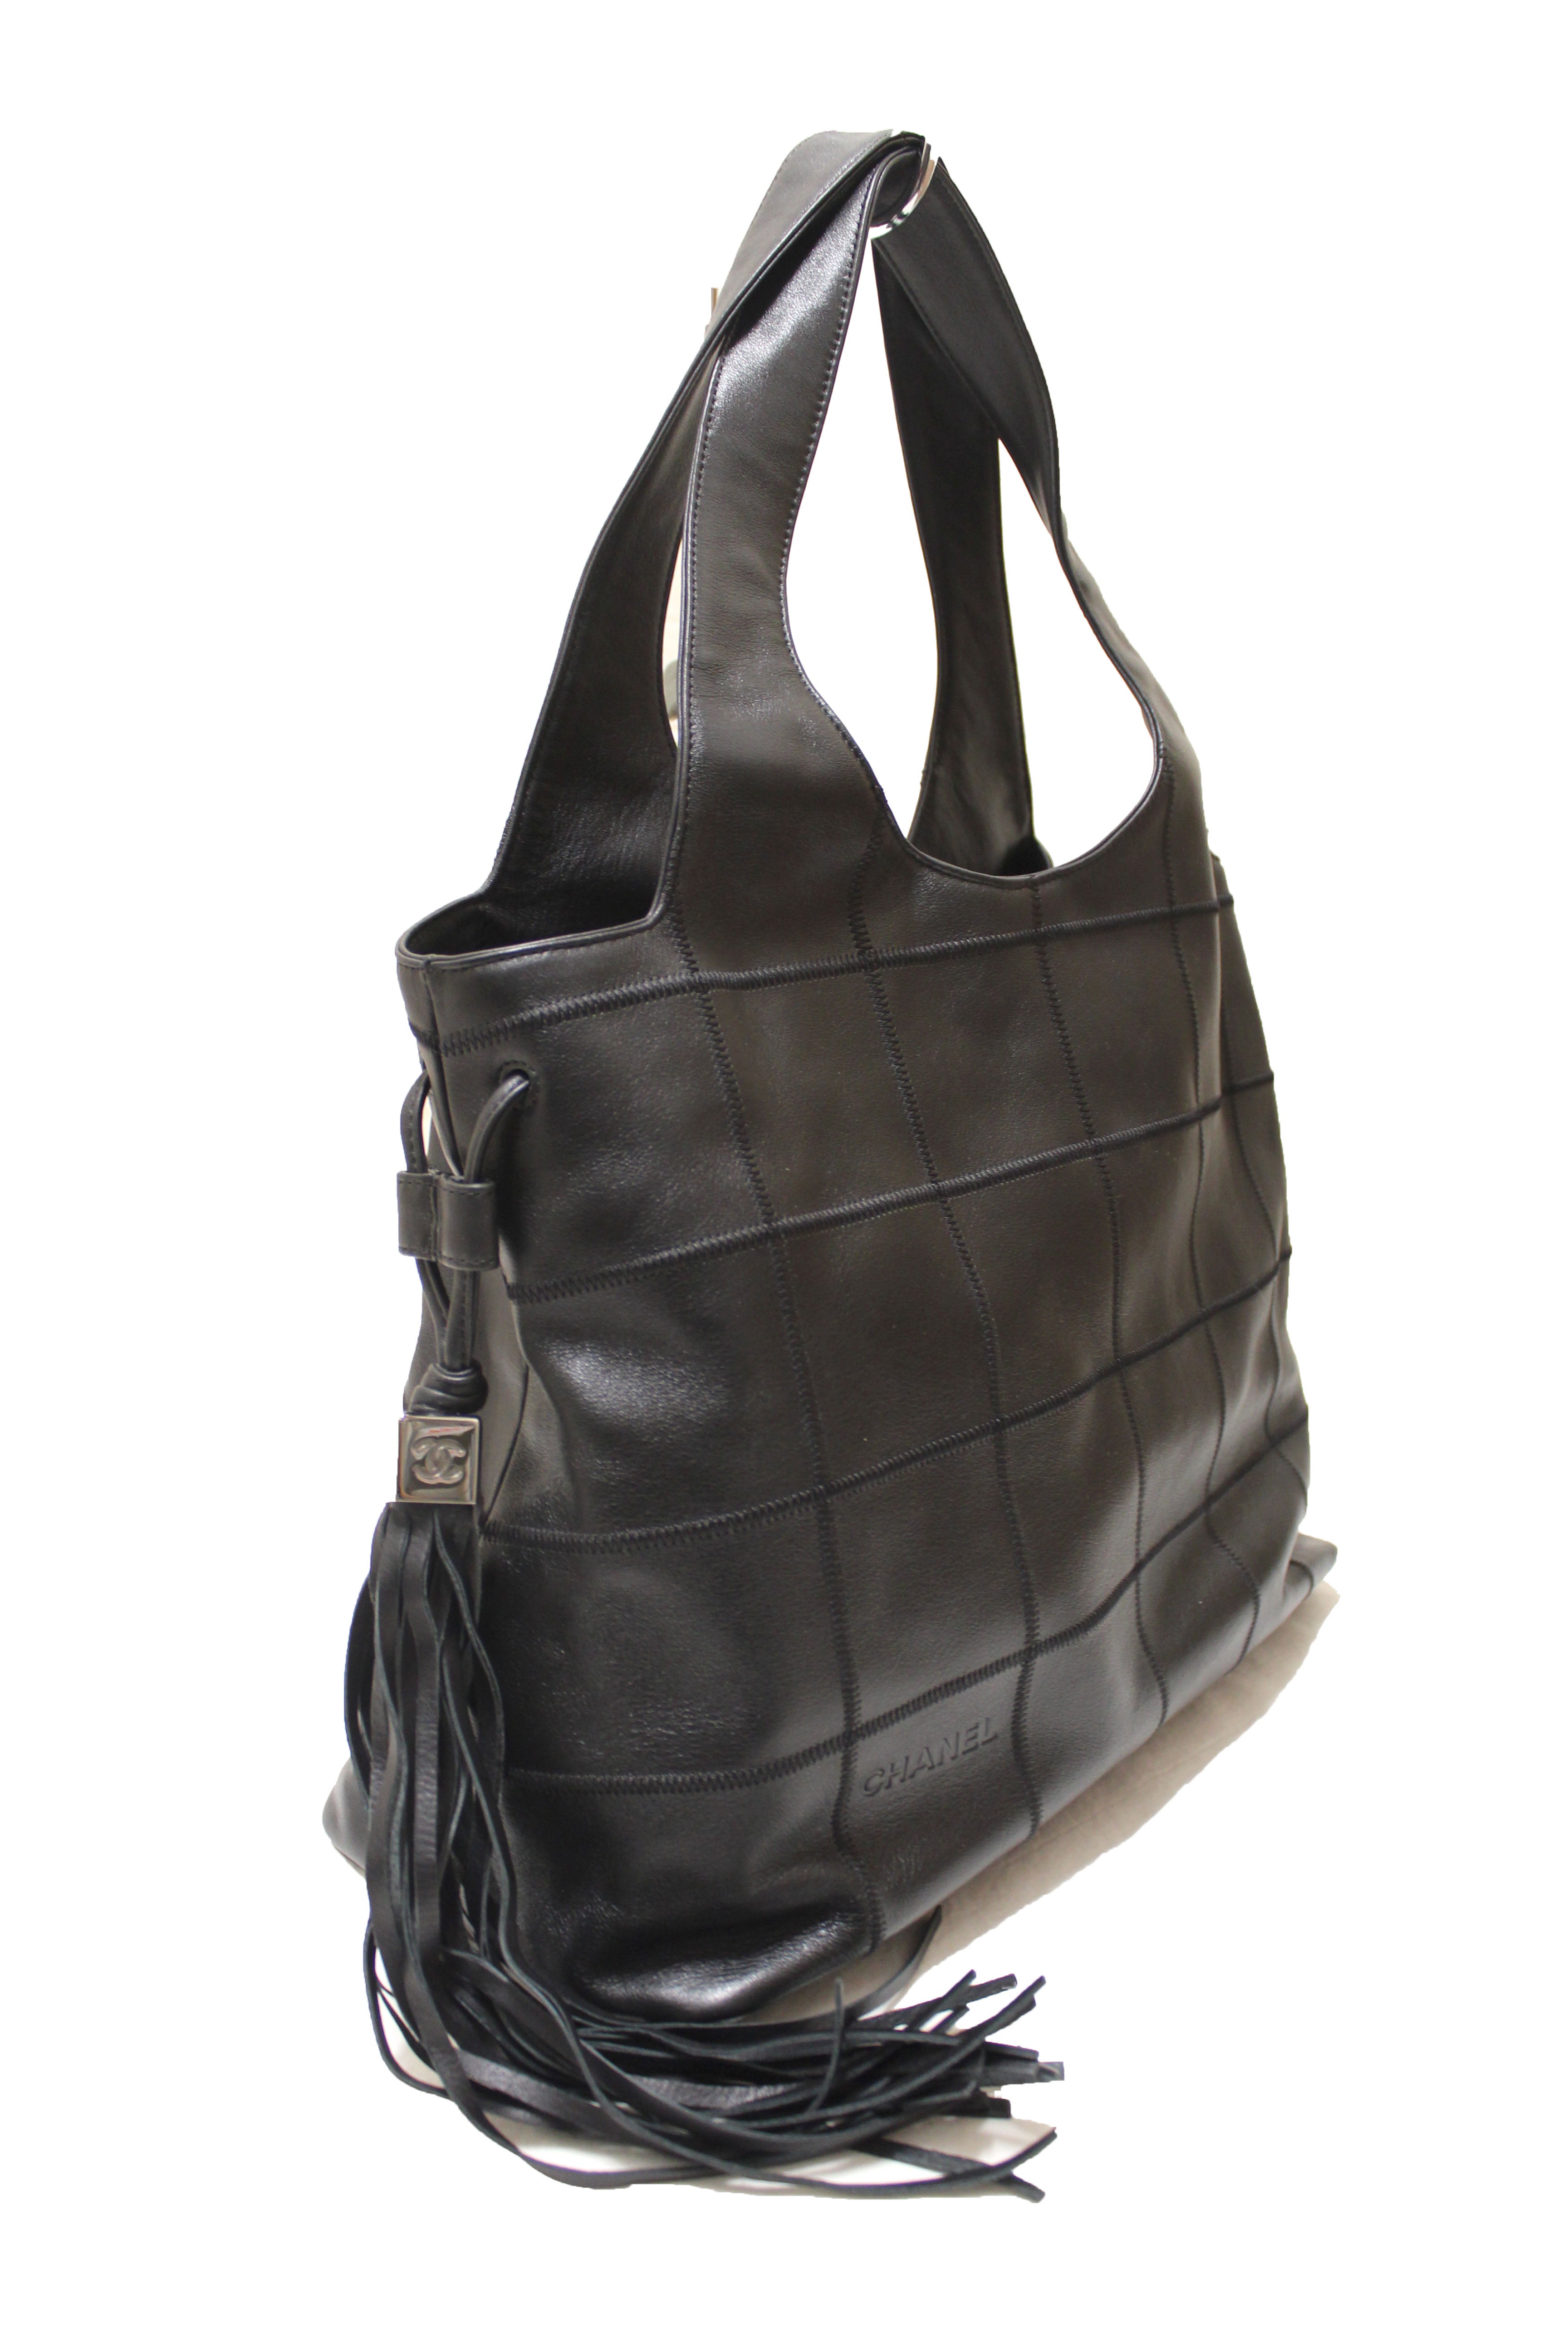 Chanel Vintage - Matelasse Tassel Lambskin Leather Bag - Black